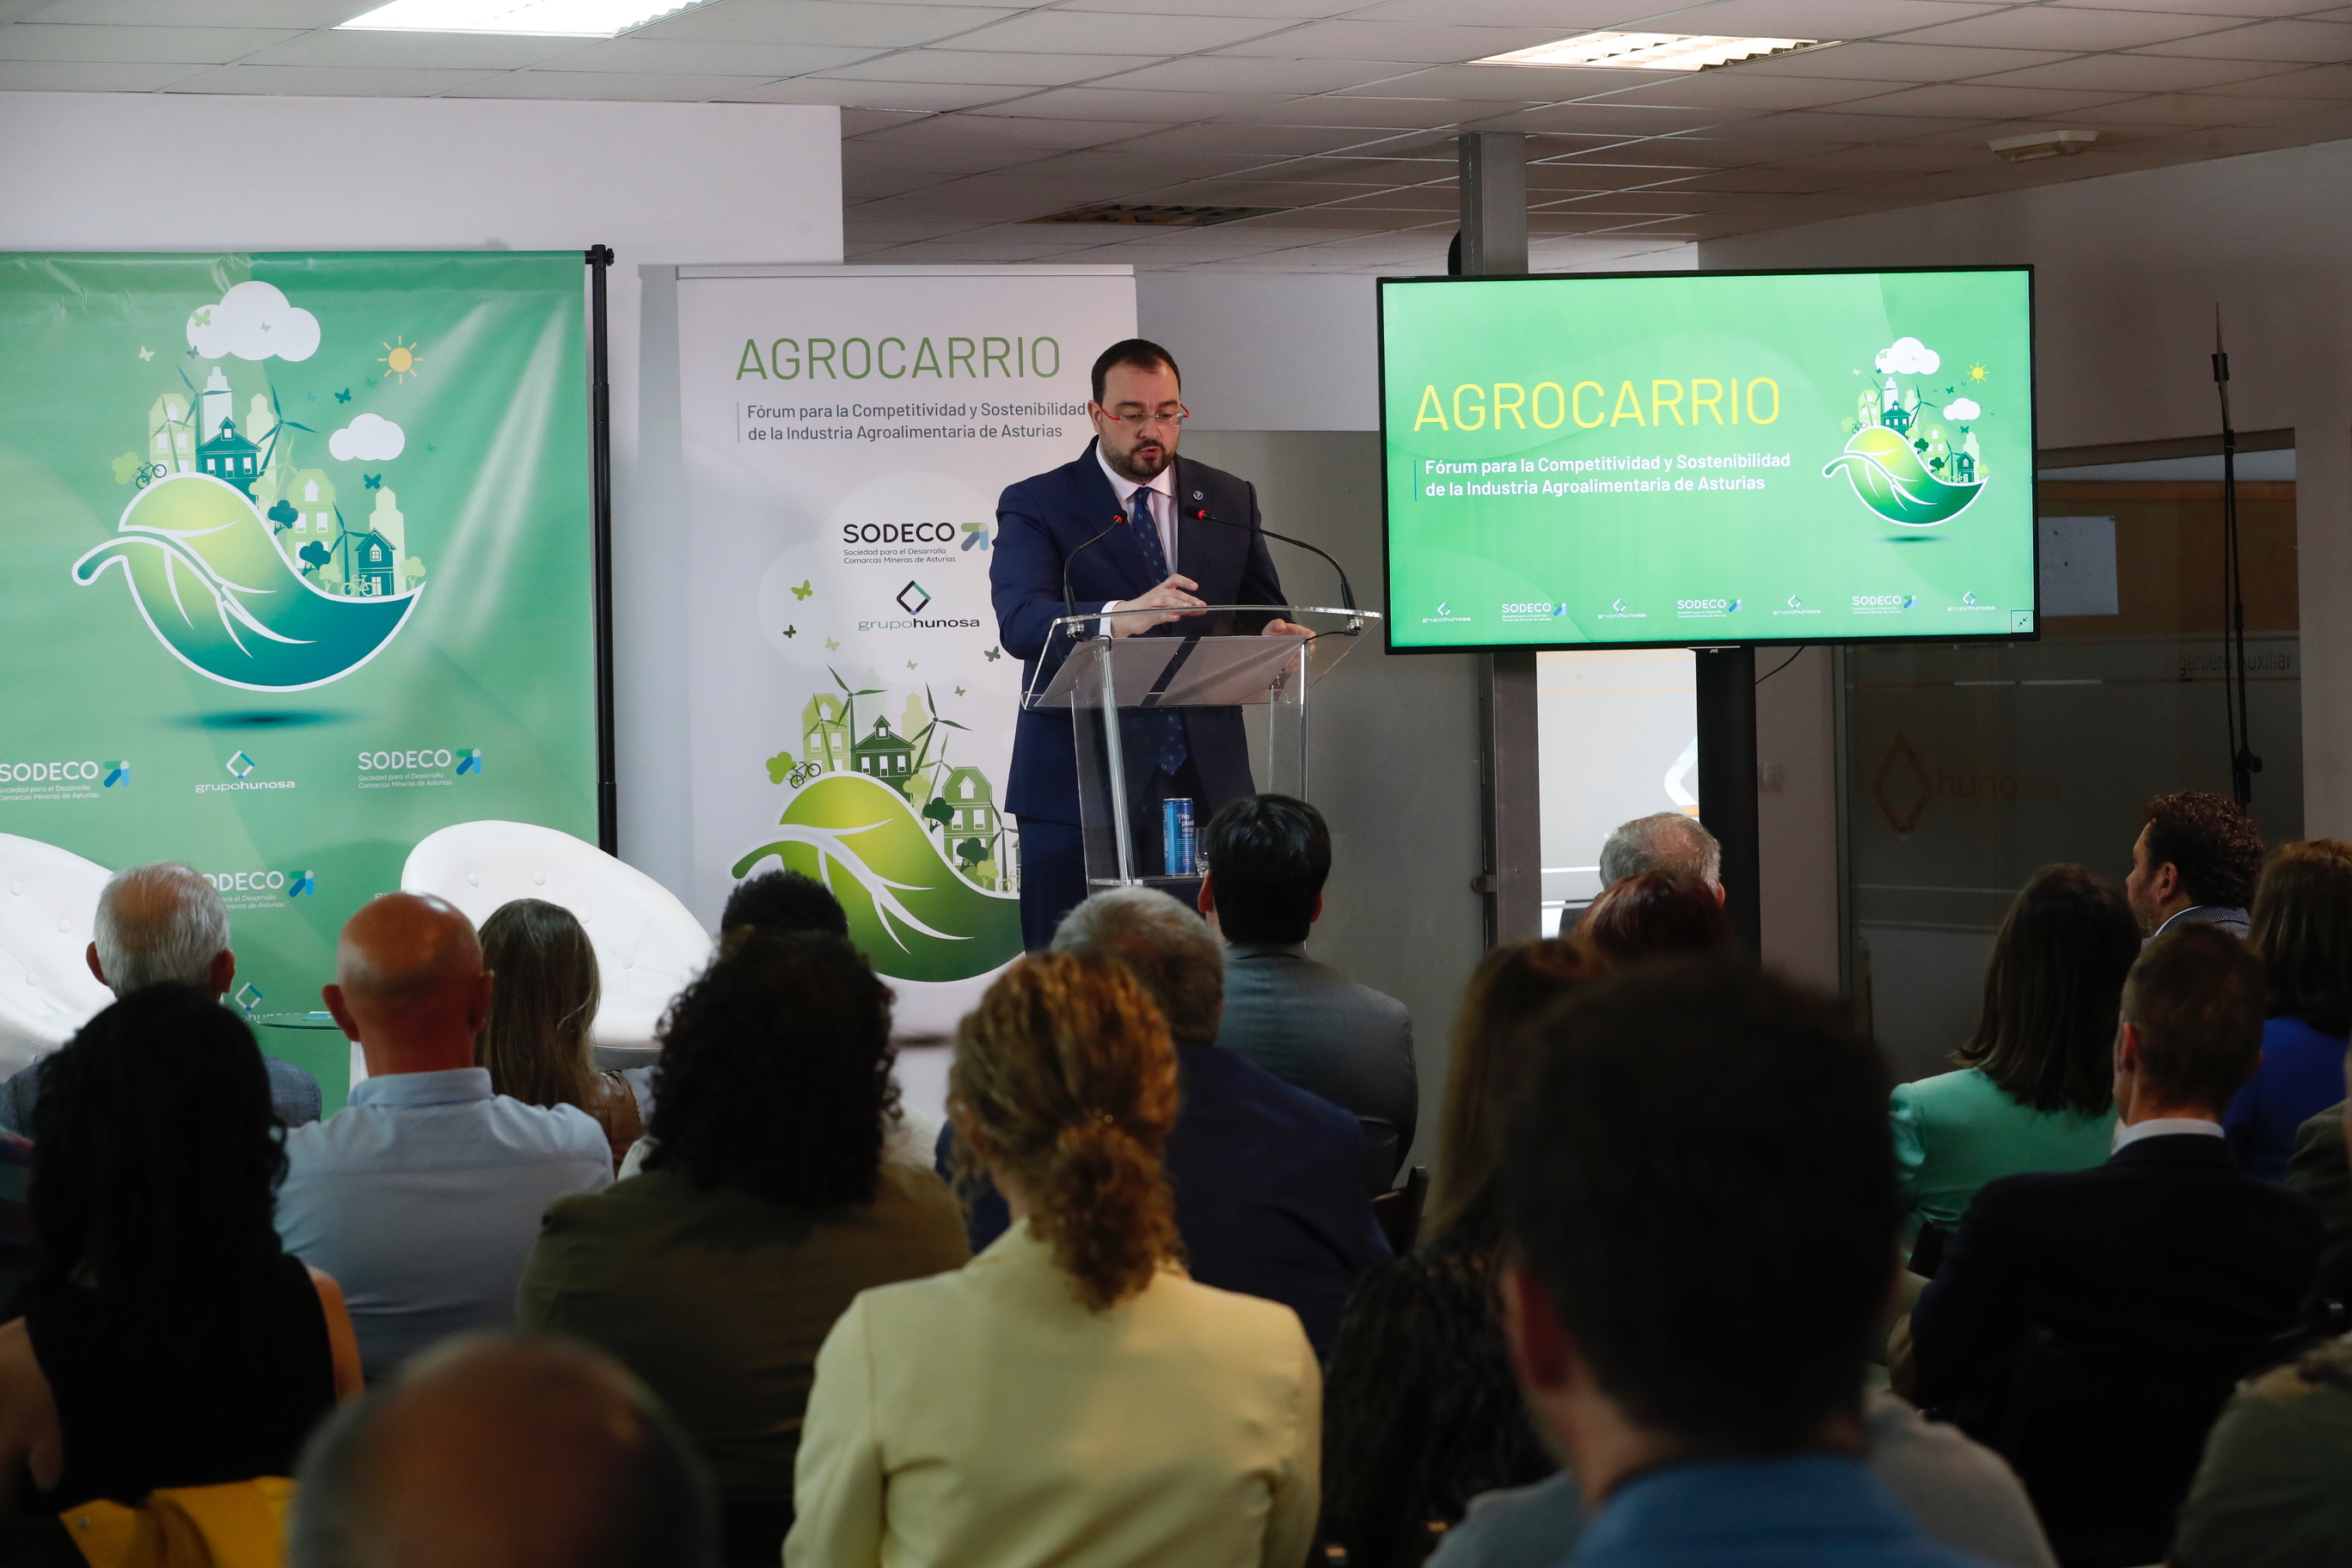 Imagen - Intervención del presidente del Principado en AgroCarrio Fórum para la Competitividad y Sostenibilidad